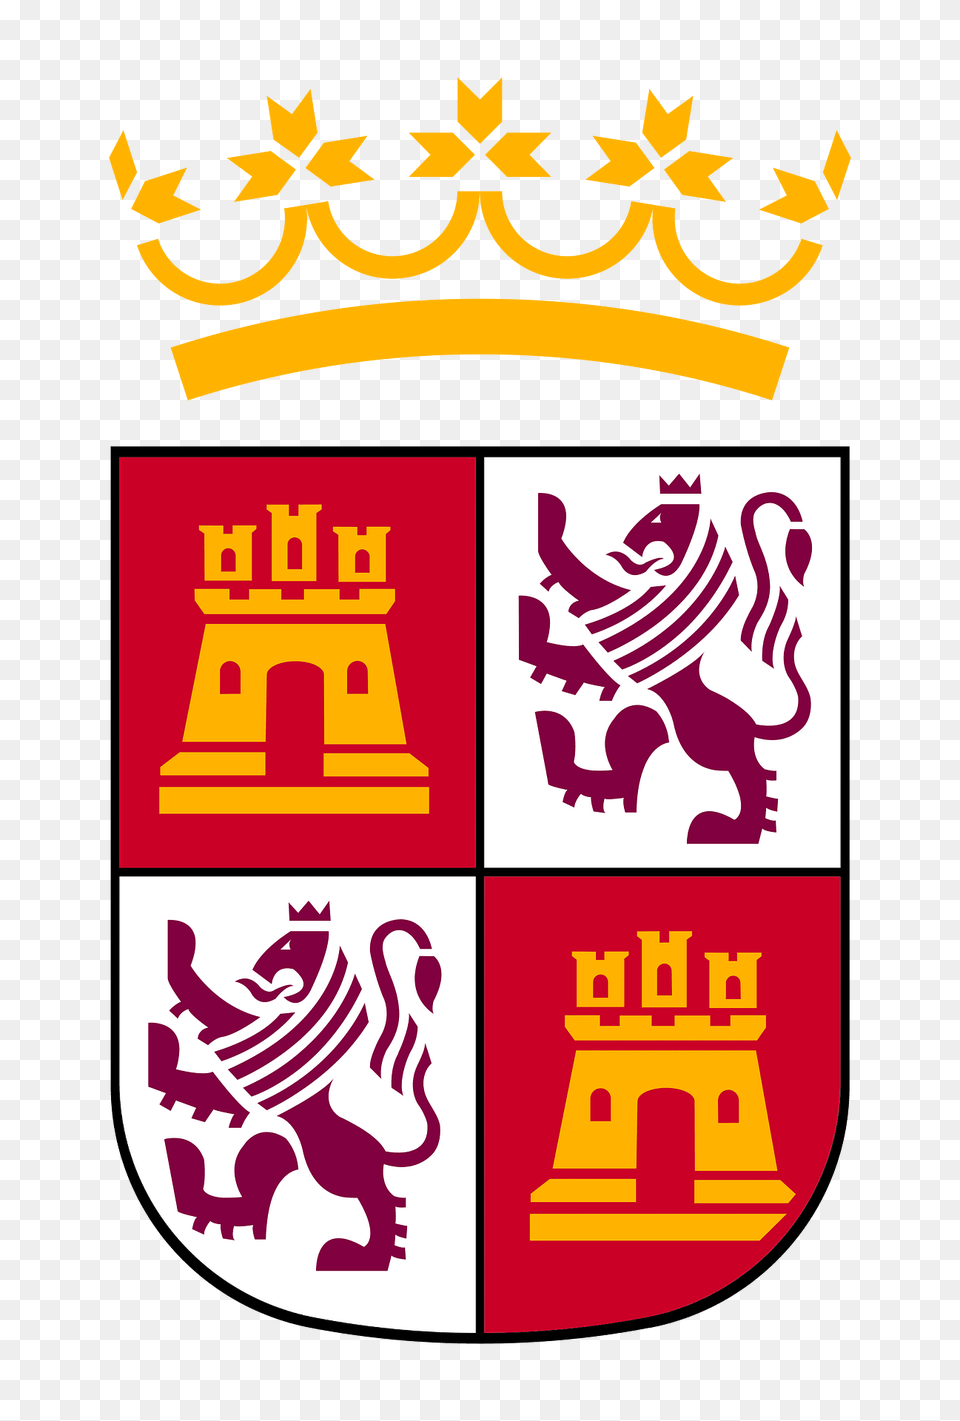 Escudo De La Junta De Castilla Y Len Clipart, Logo, Baby, Person, Animal Free Png Download